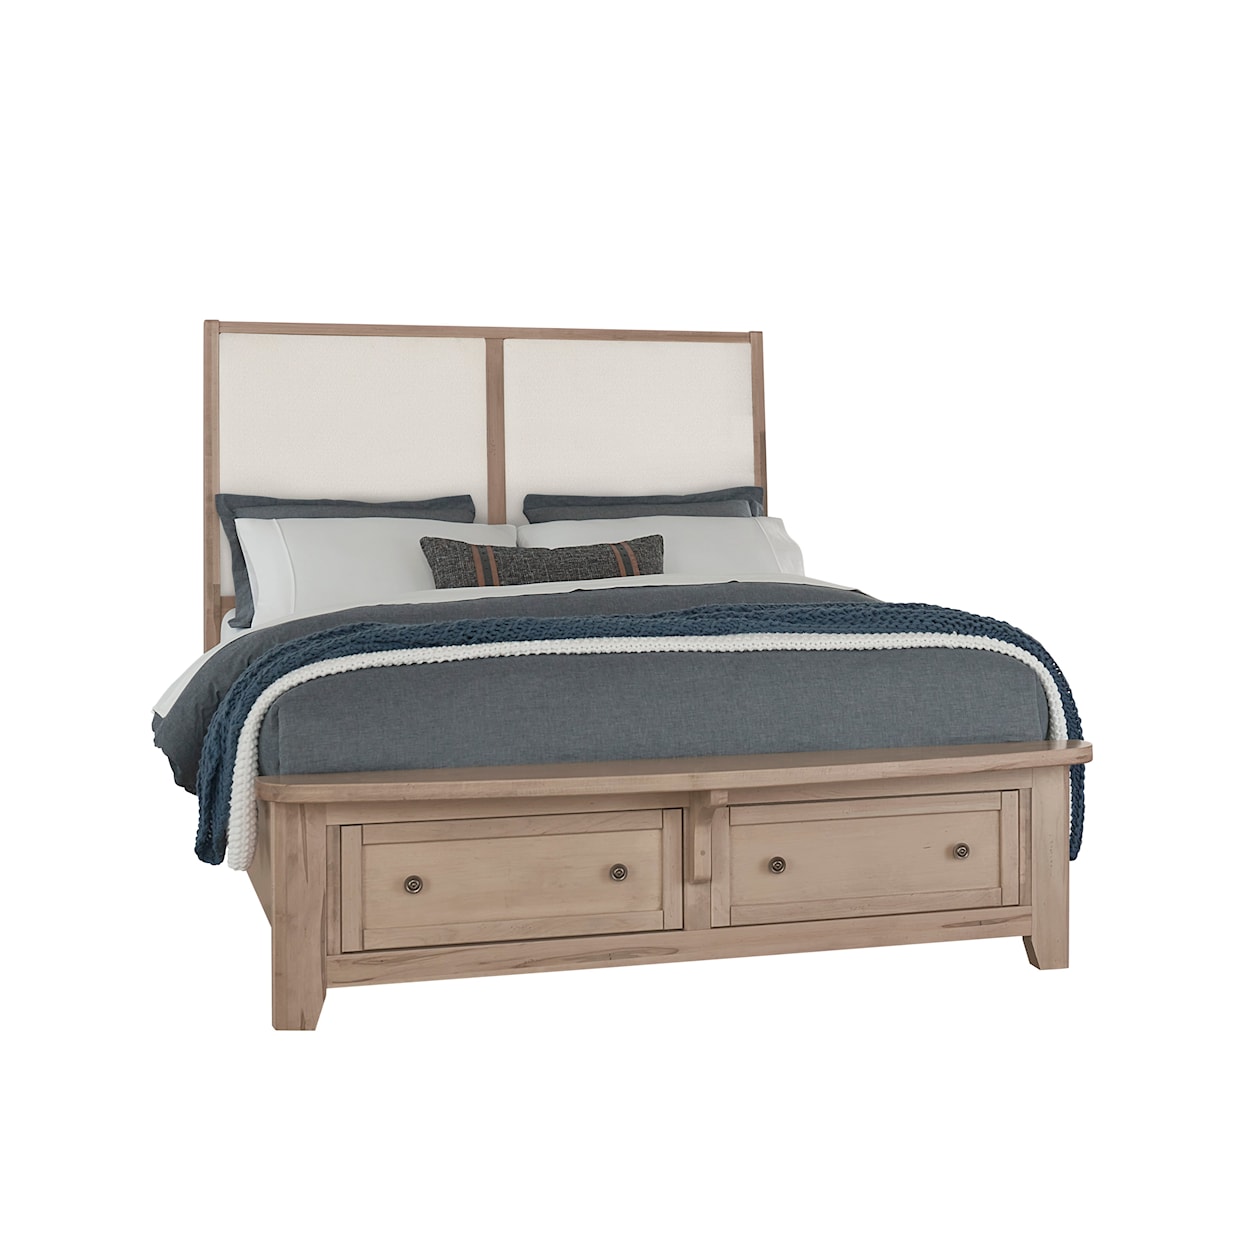 Vaughan Bassett Woodbridge Queen Upholstered Storage Bed